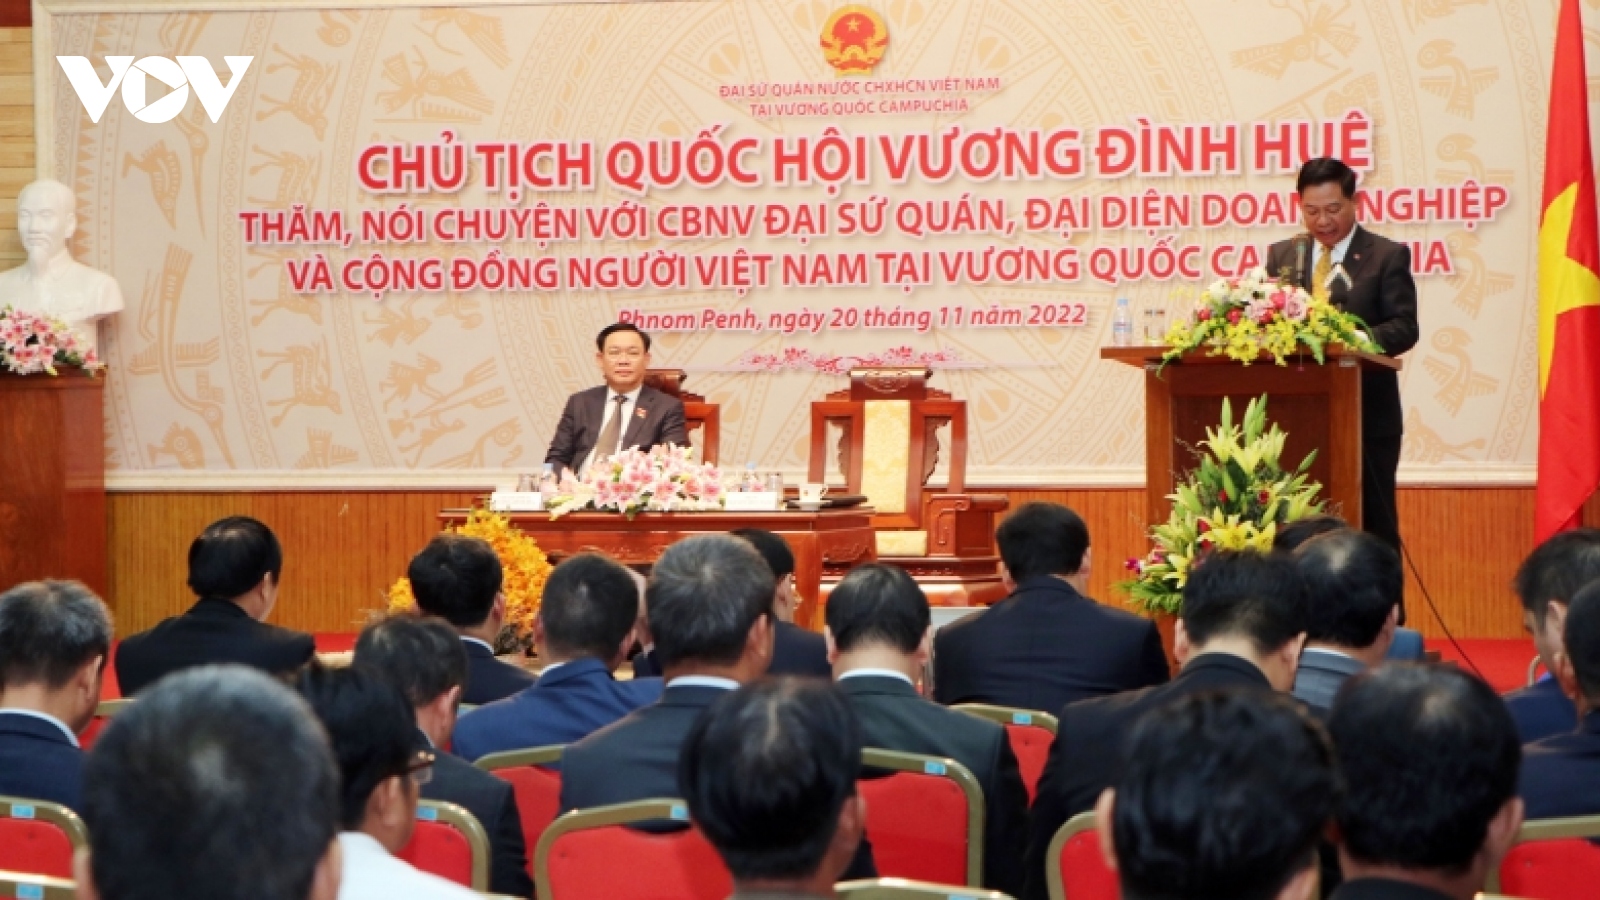 Chủ tịch Quốc hội giải đáp mong muốn nhập quốc tịch Campuchia của Kiều bào